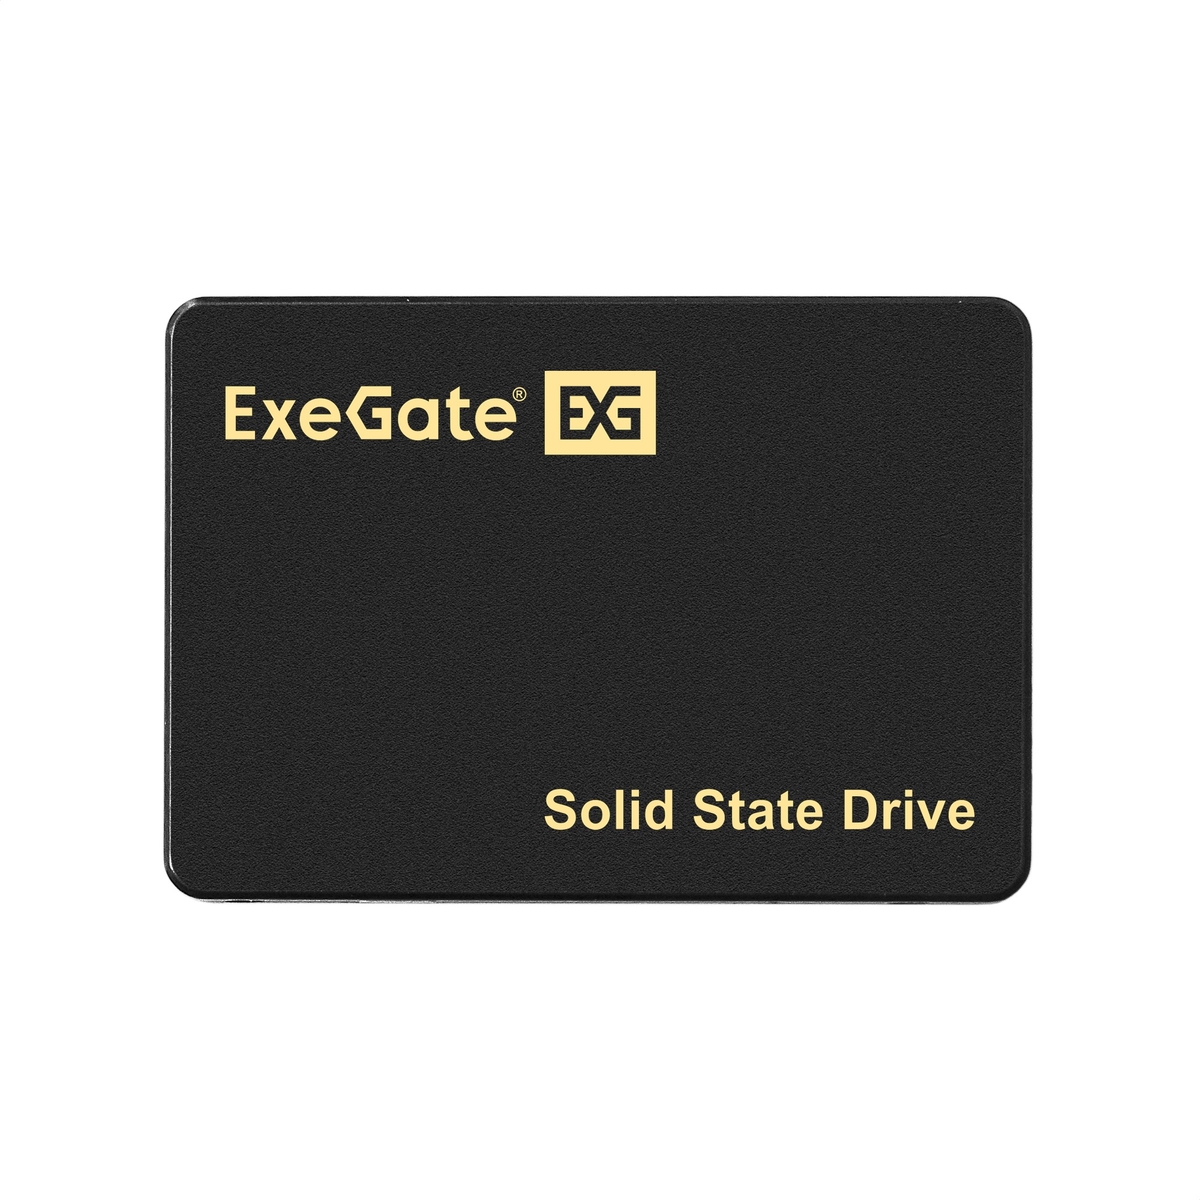 ExeGate NextPro+ UV500TS256